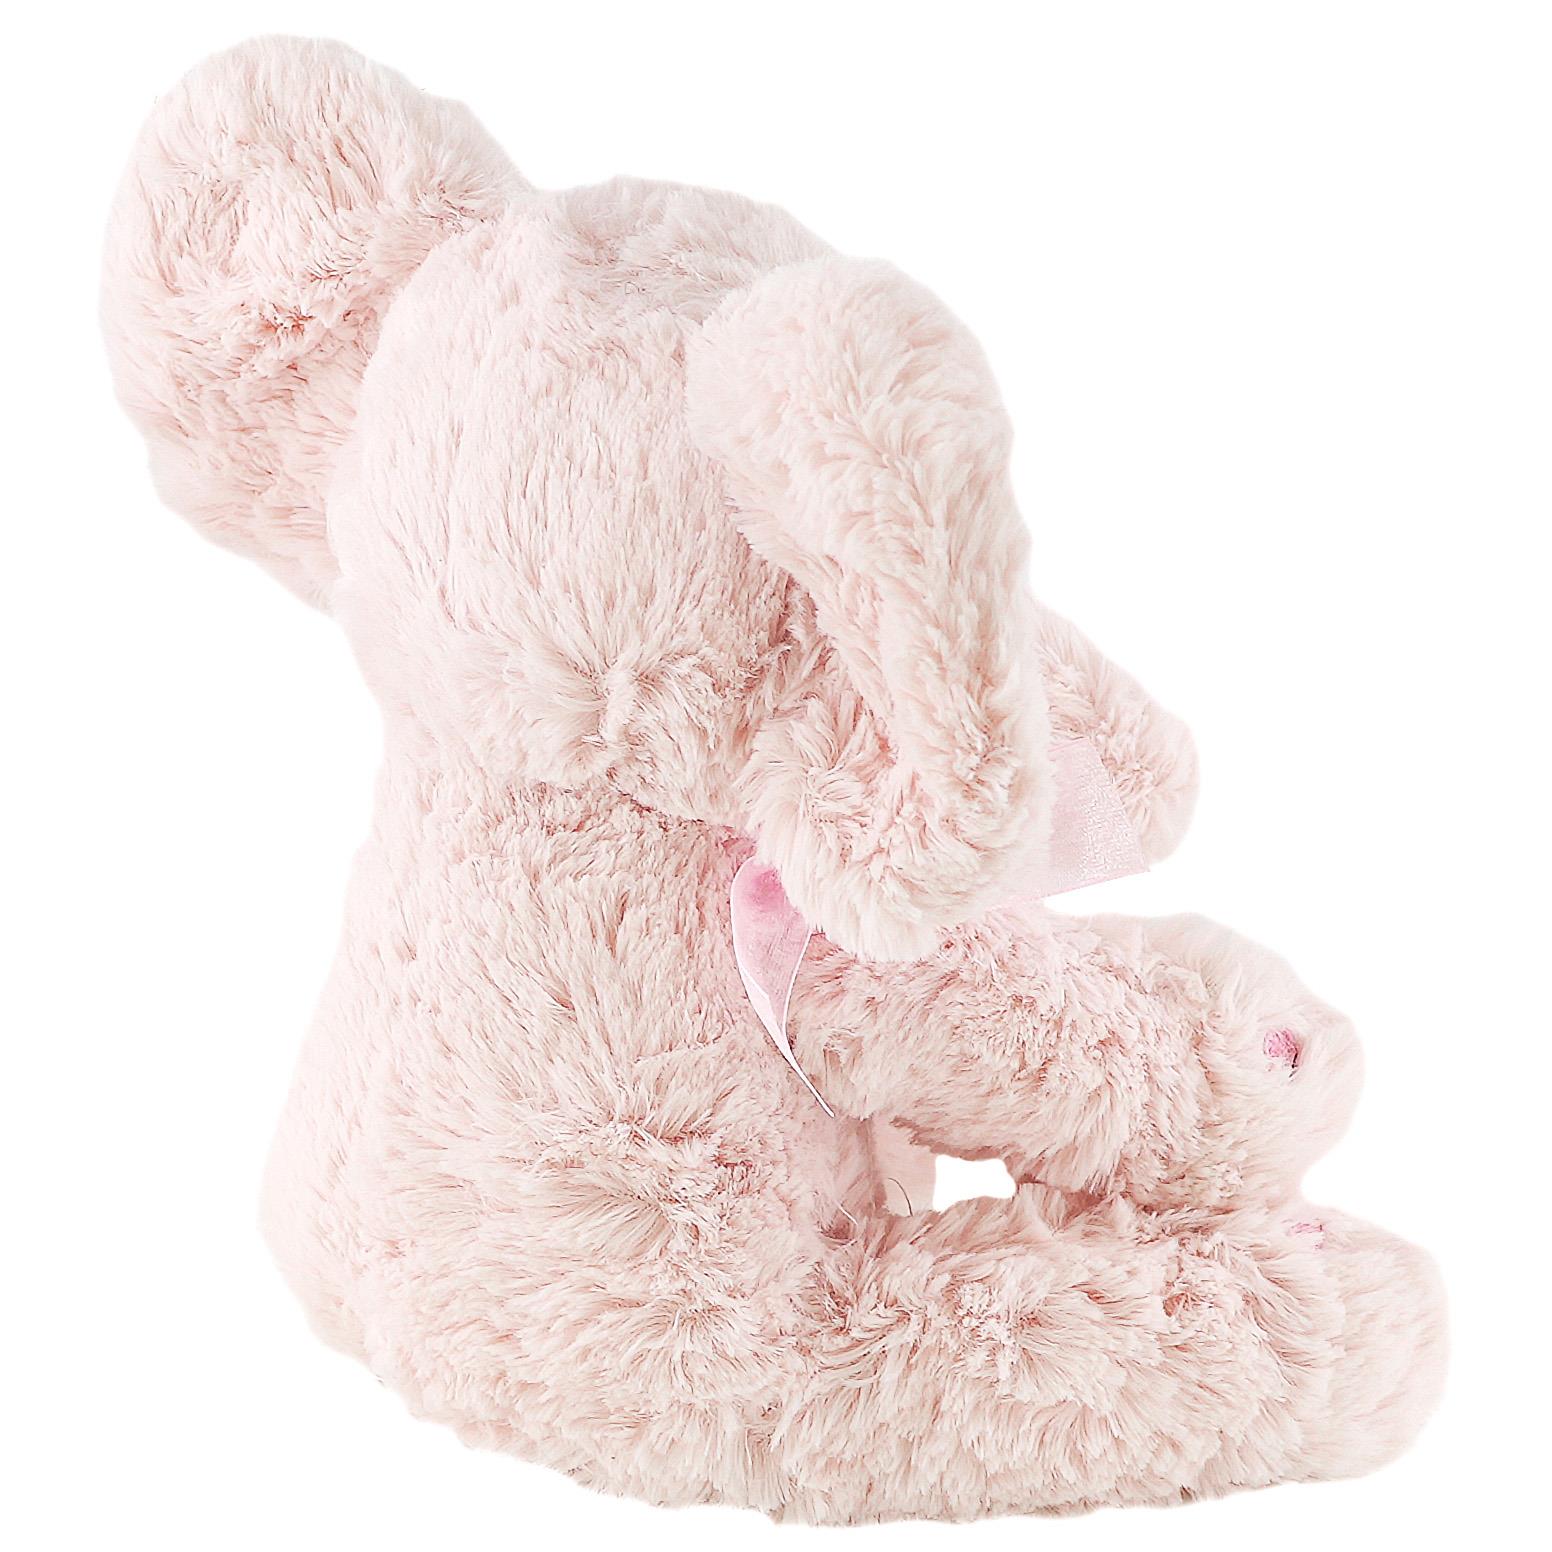 Pink Plush Elephant Soft Toys by The Magic Toy Shop - UKBuyZone